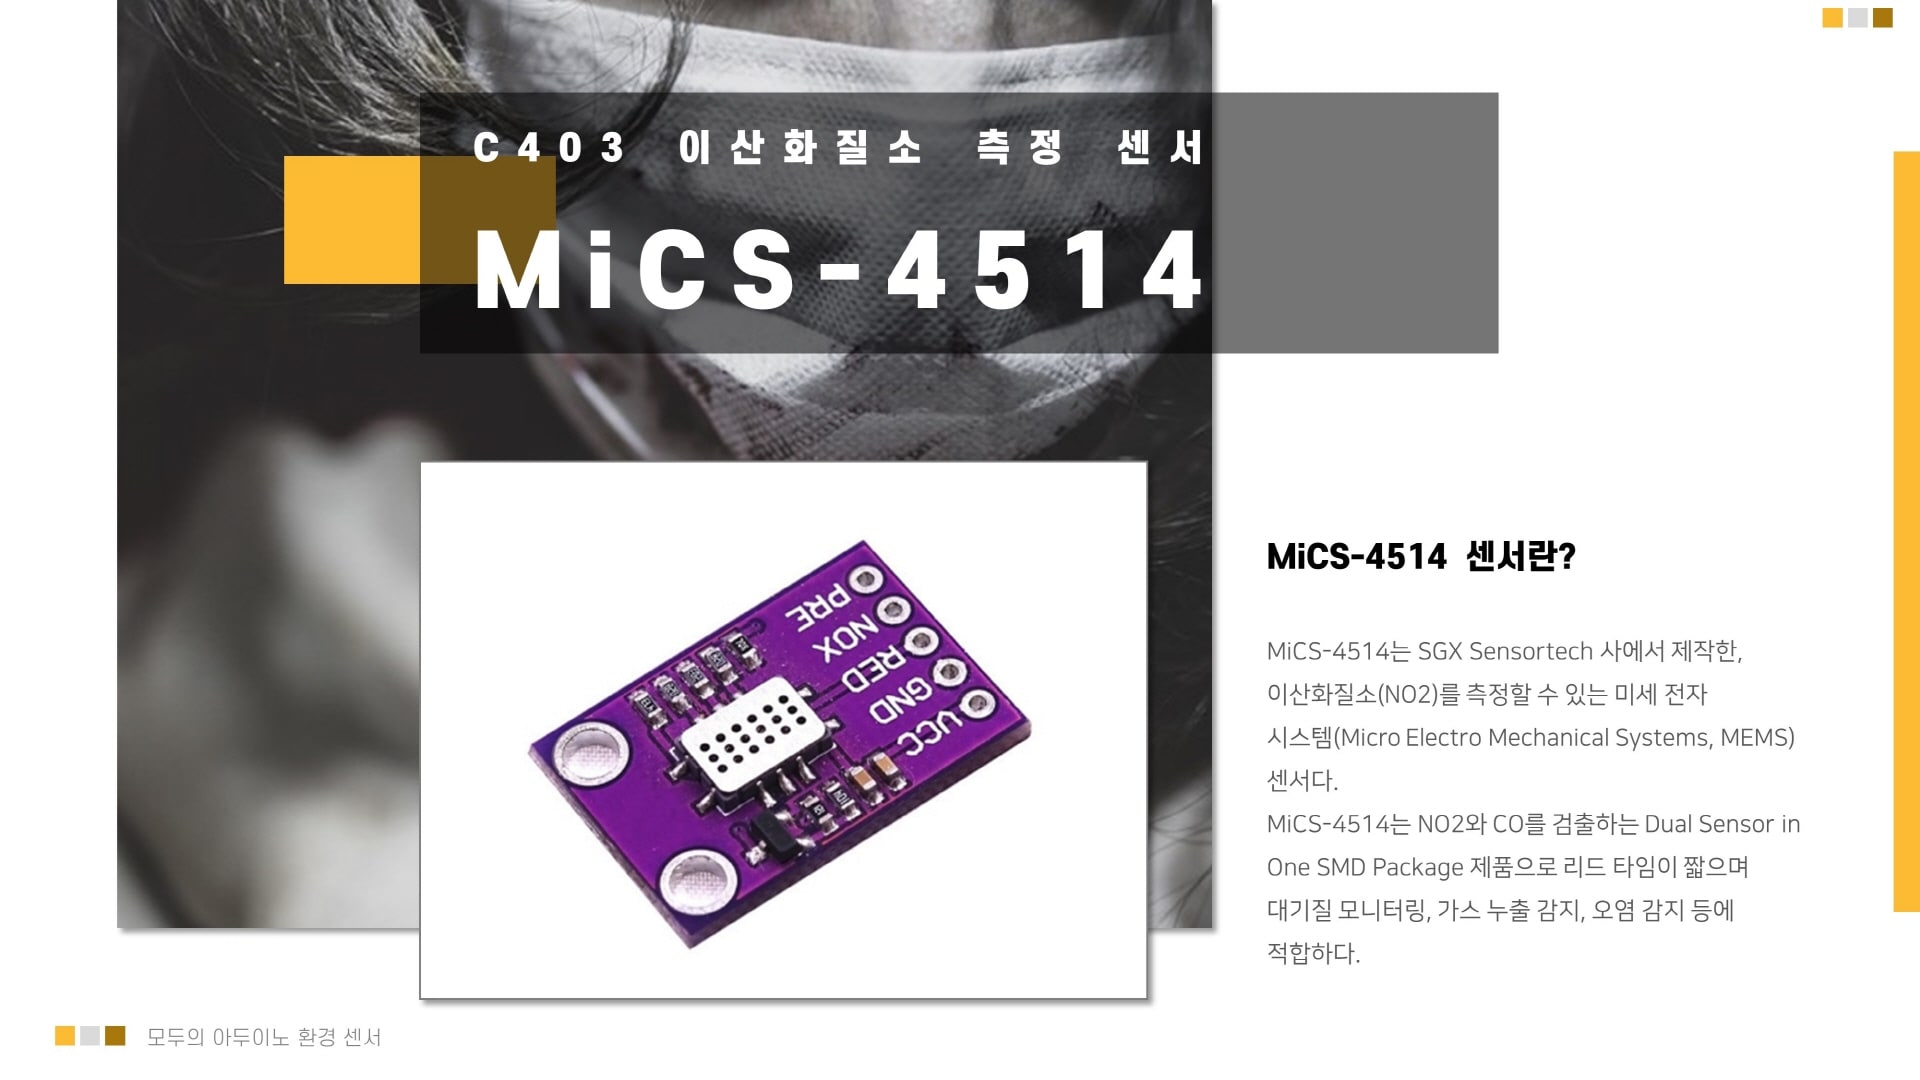 MiCS-4514 이산화질소(NO2) 아두이노 센서 이미지 입니다.